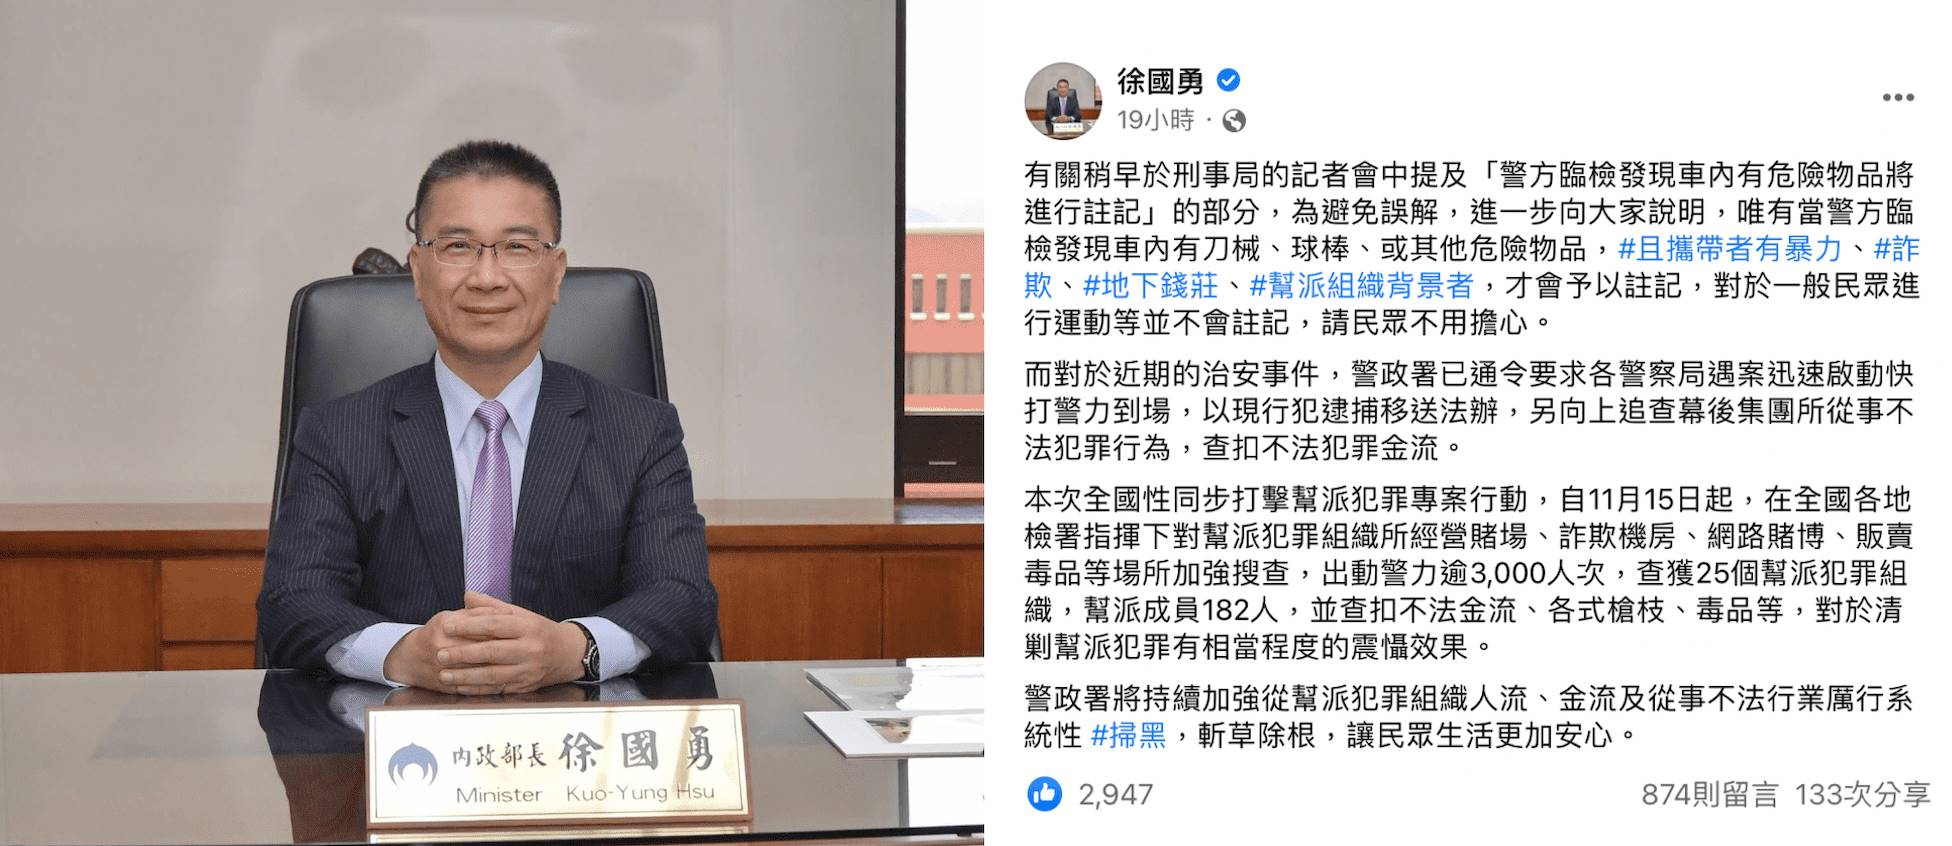 內政部長徐國勇針對球棒註記進行解釋